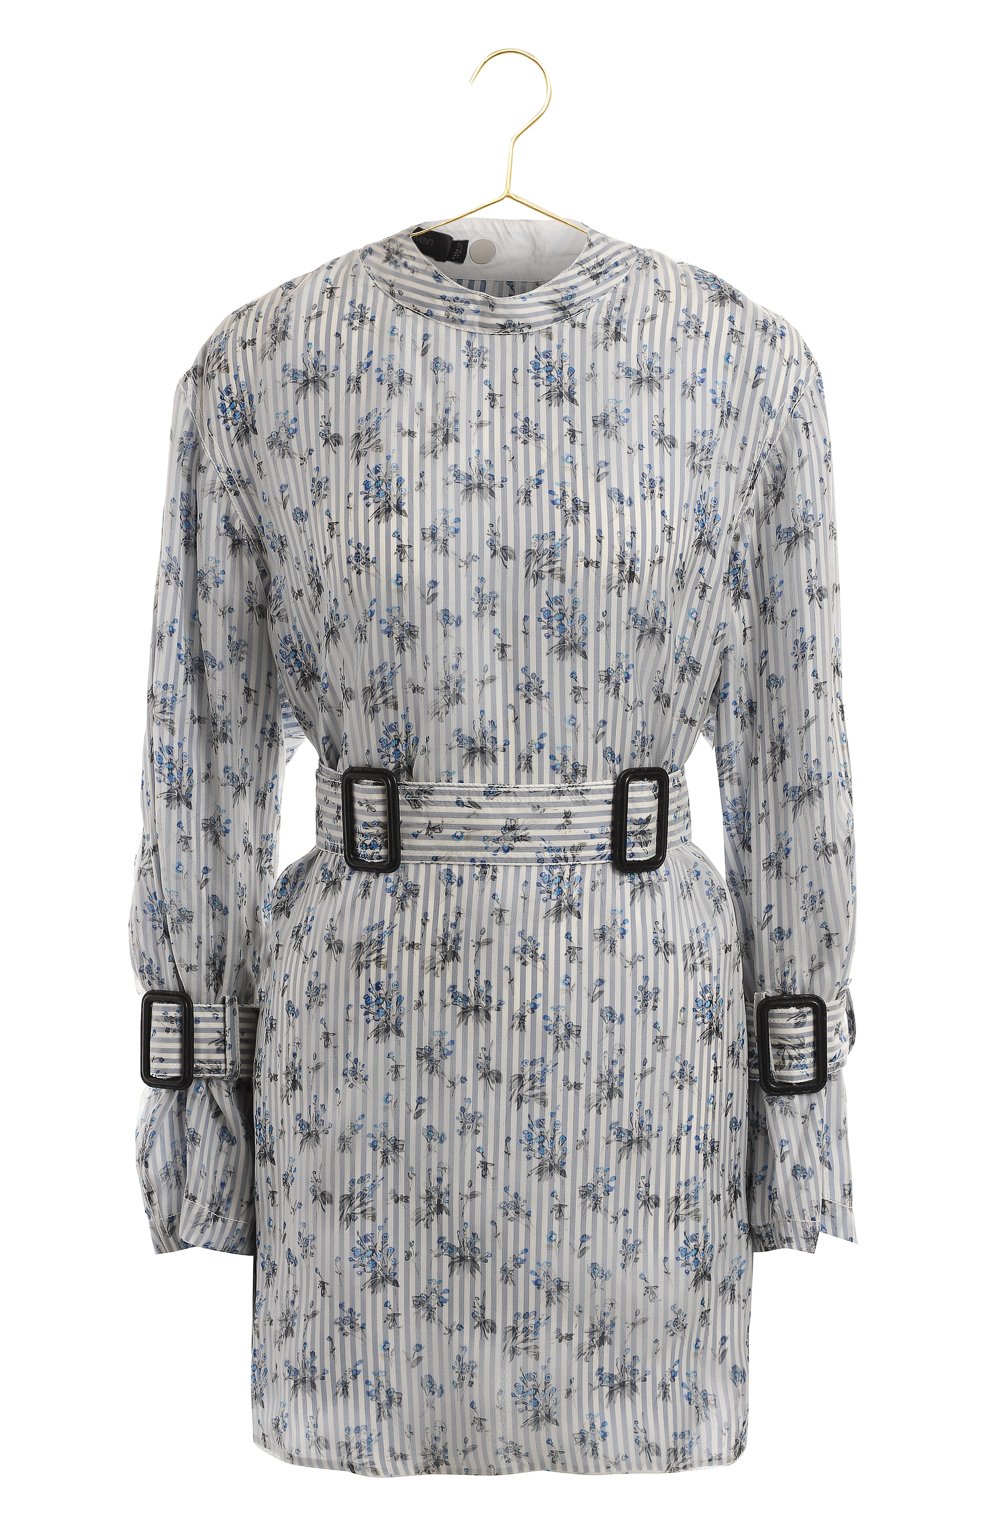 Шелковая блузка | Calvin Klein | Голубой - 1